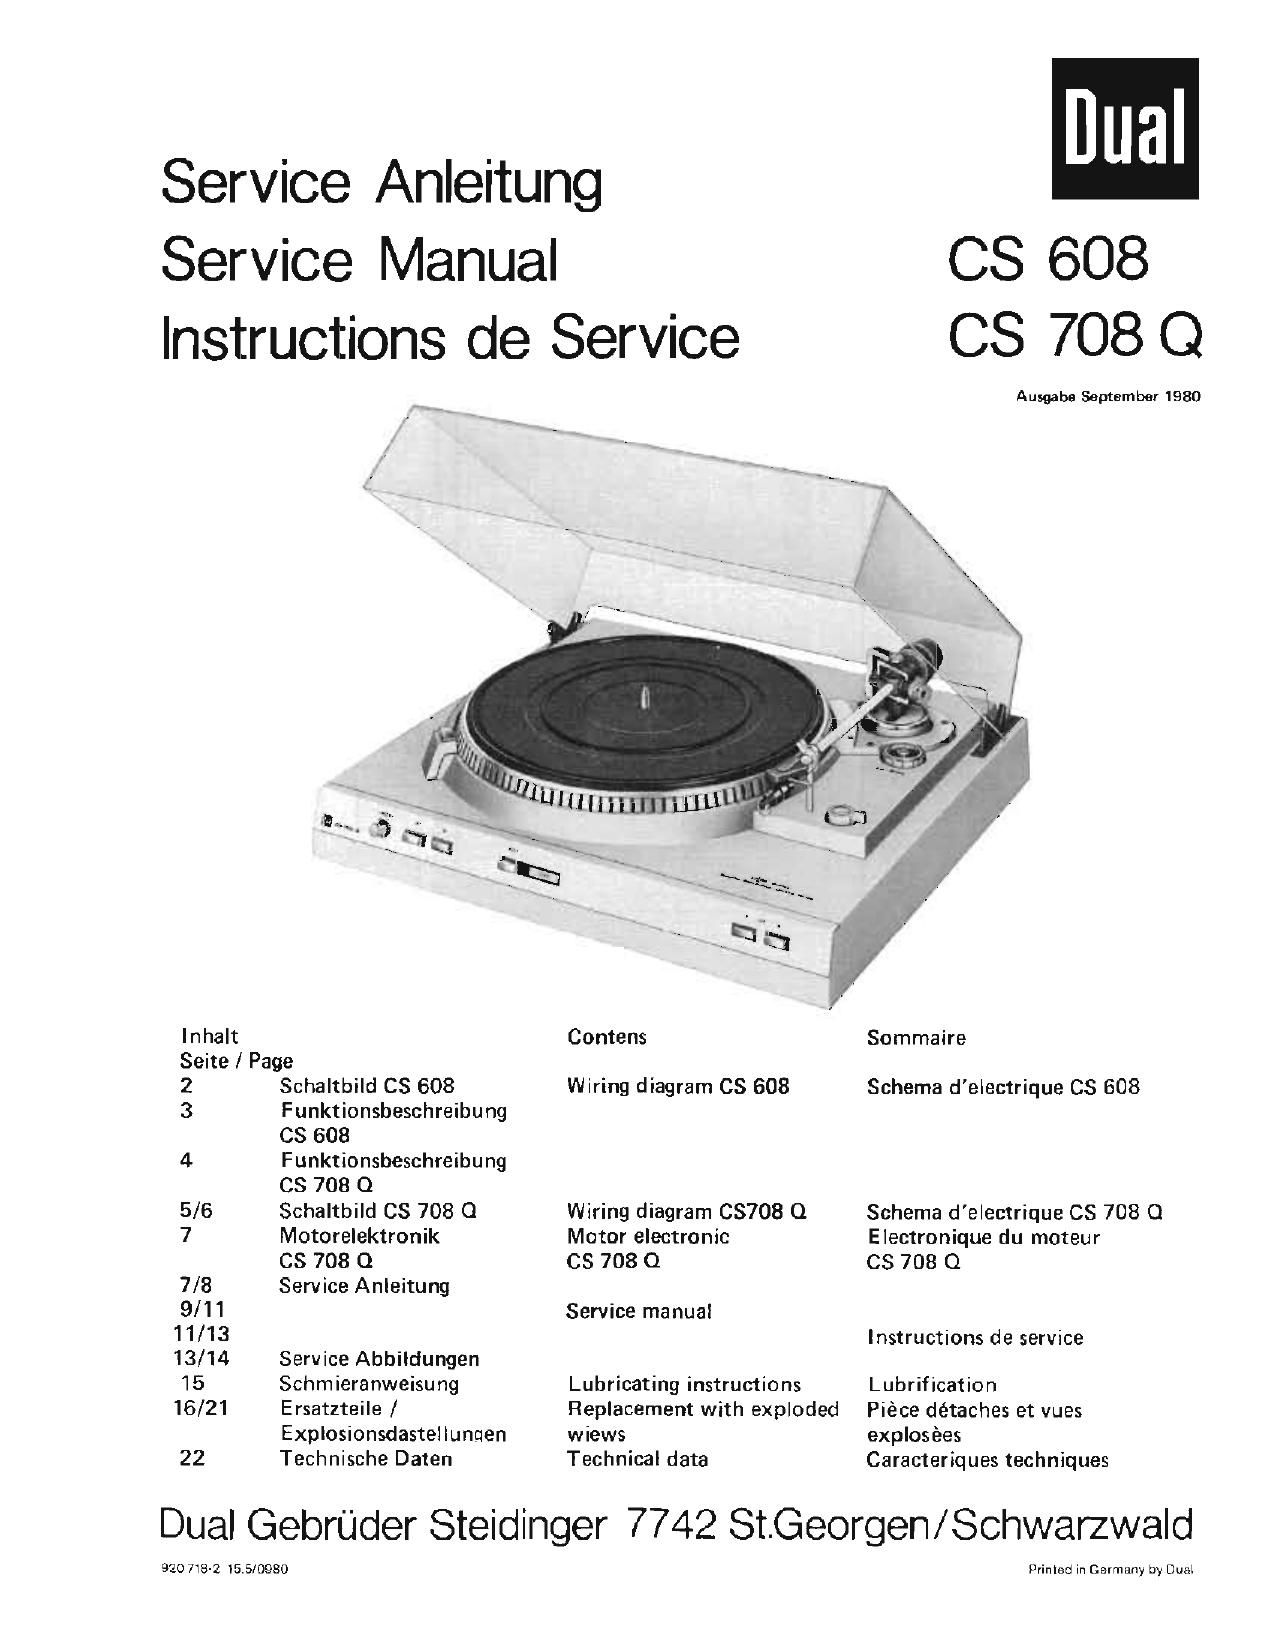 Dual CS 708 Q Service Manual